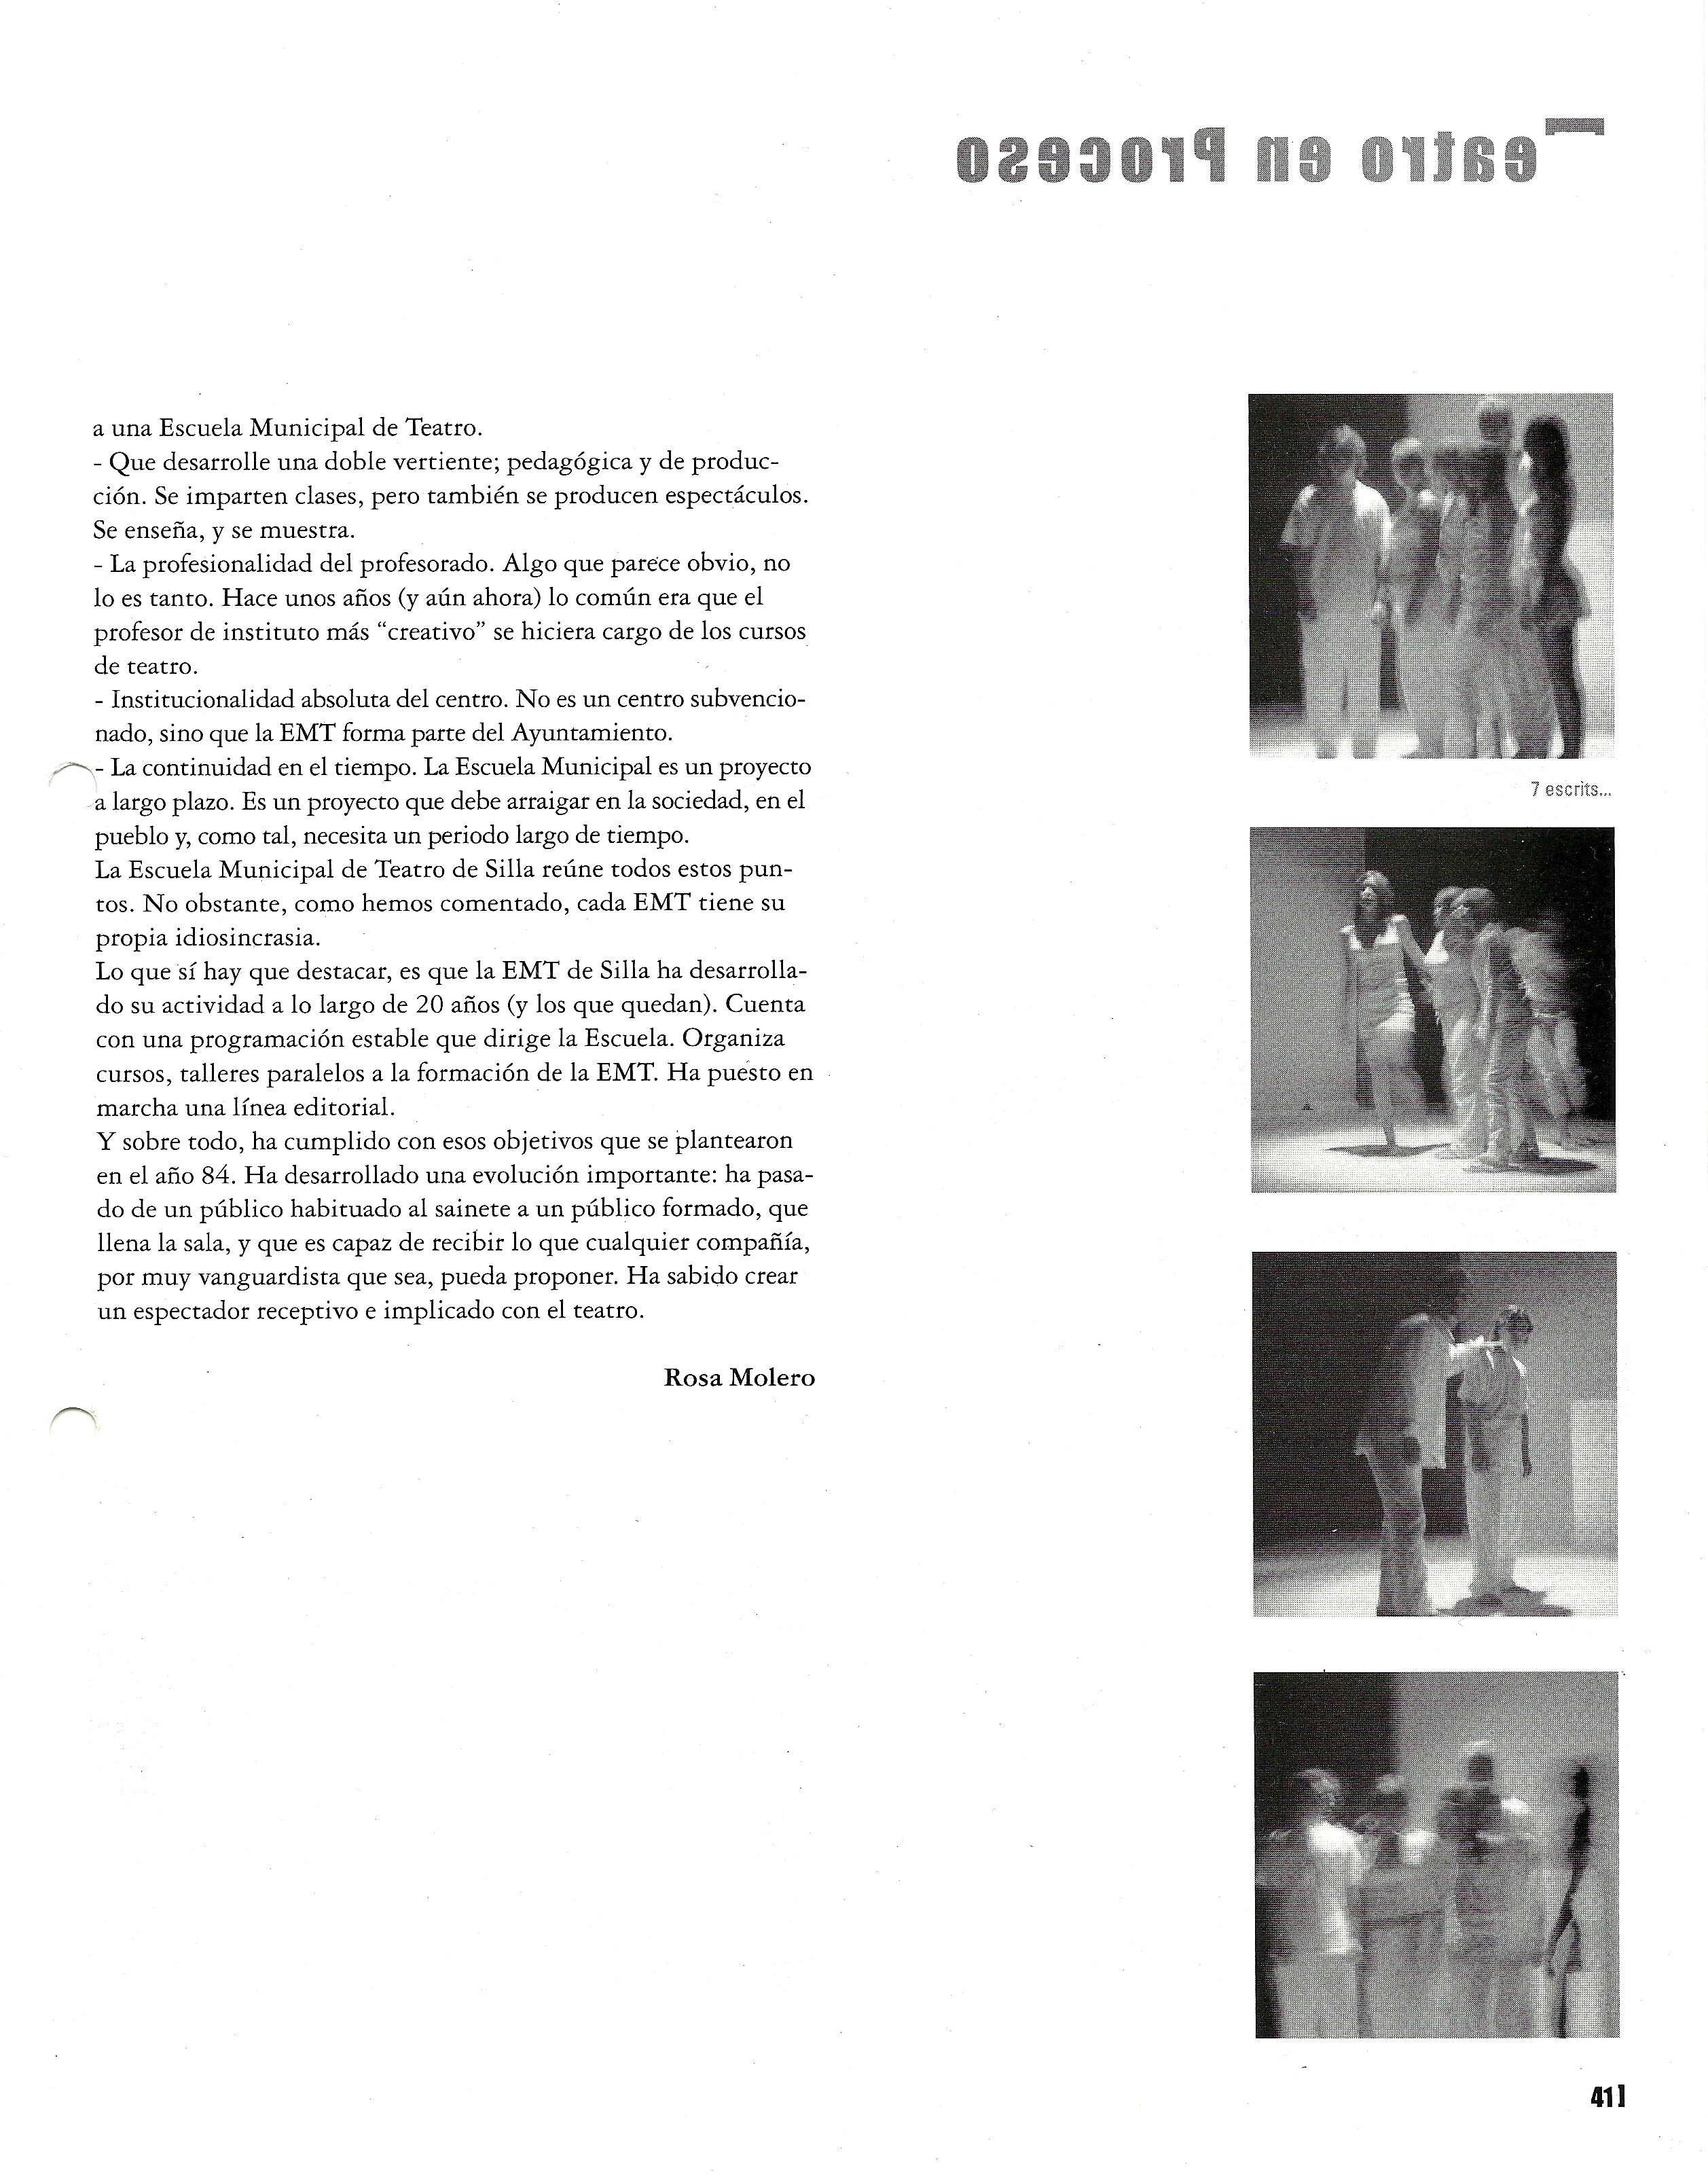 2004 Reportatge en Acotaciones nº 4